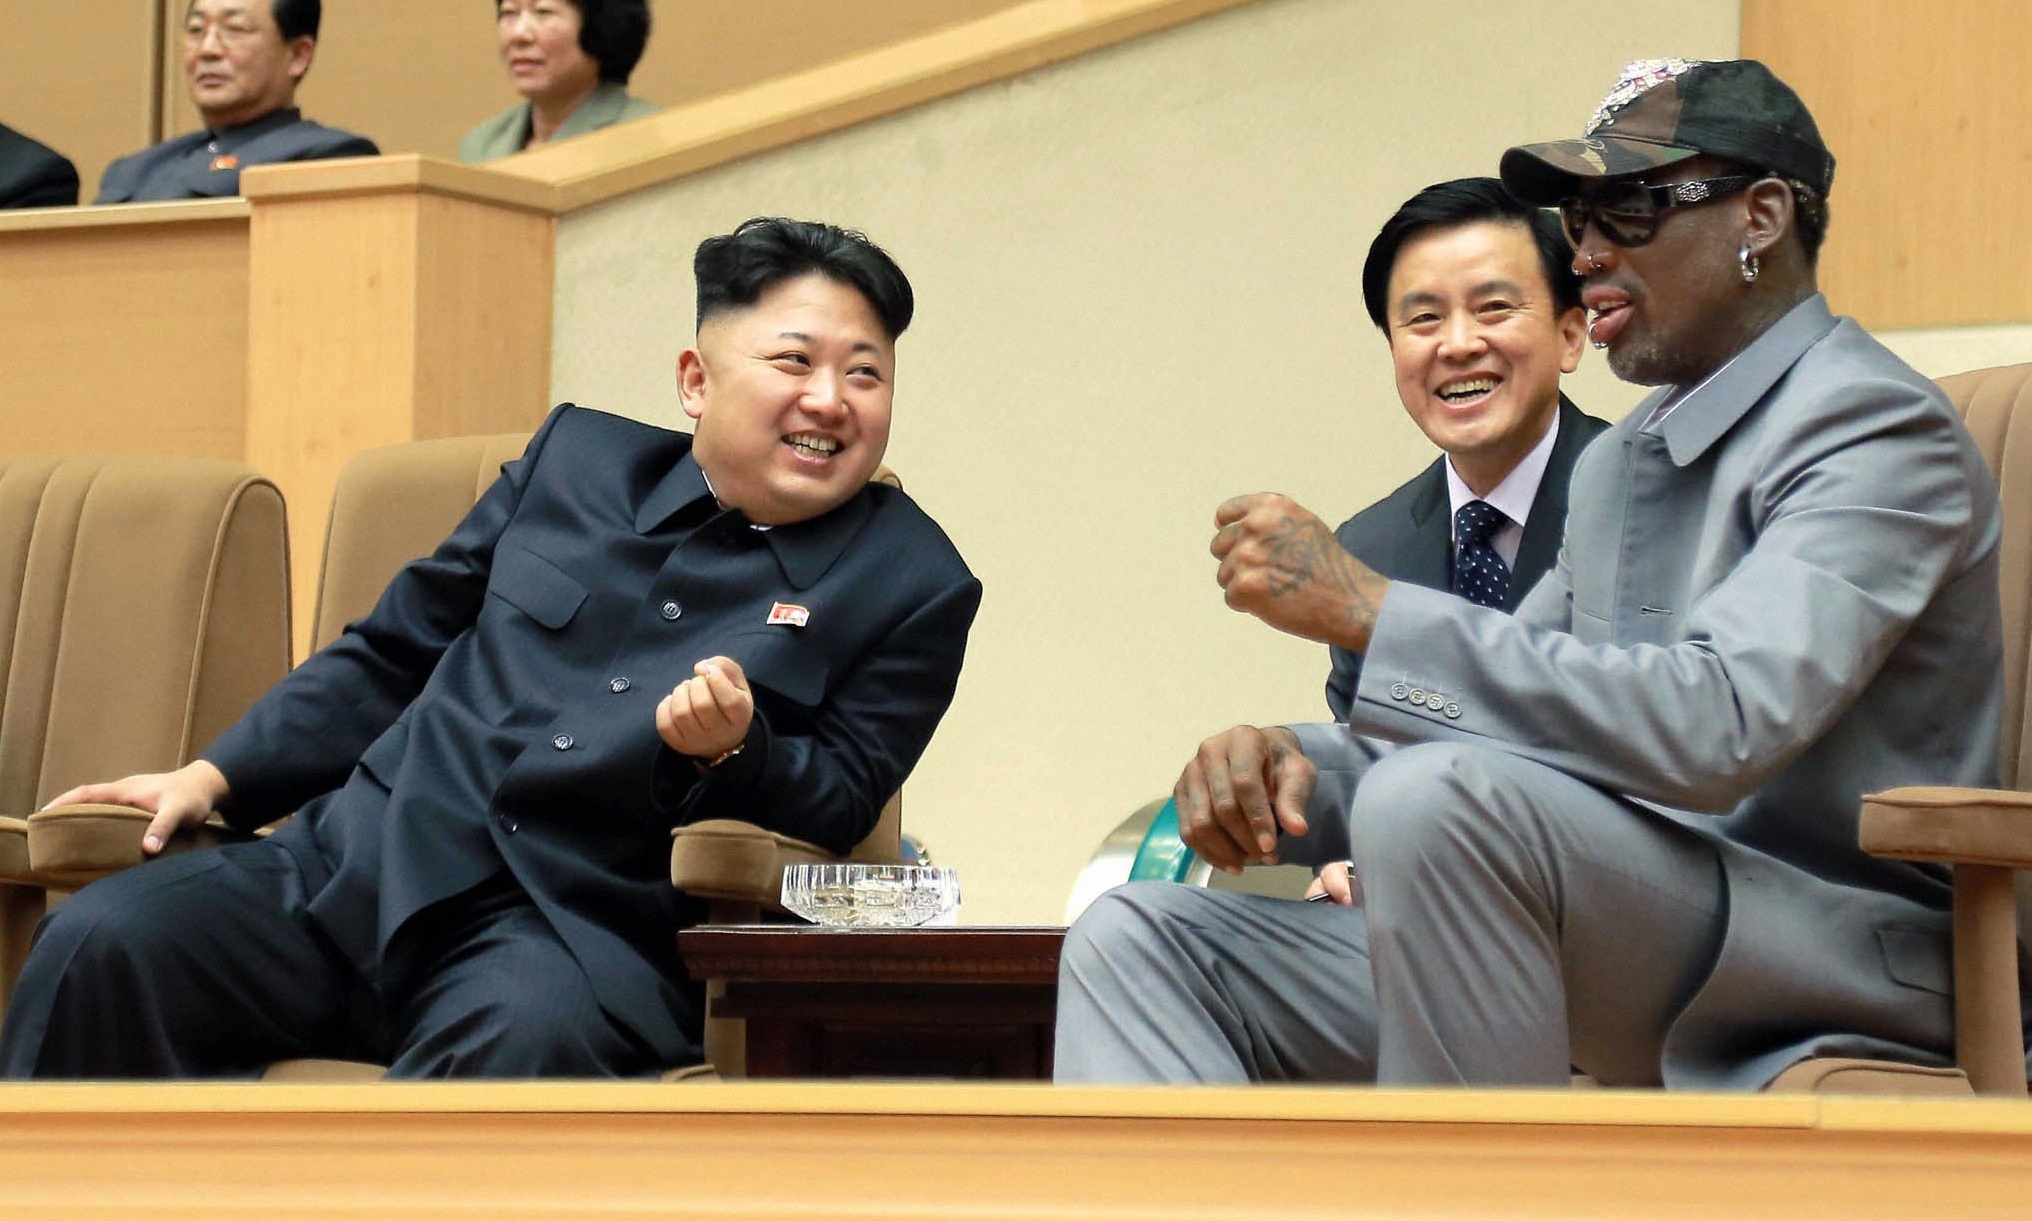 Dezvăluiri incredibile despre Kim Jong-un. ”Eram beți criță”. Ce a făcut dictatorul nord-coreean